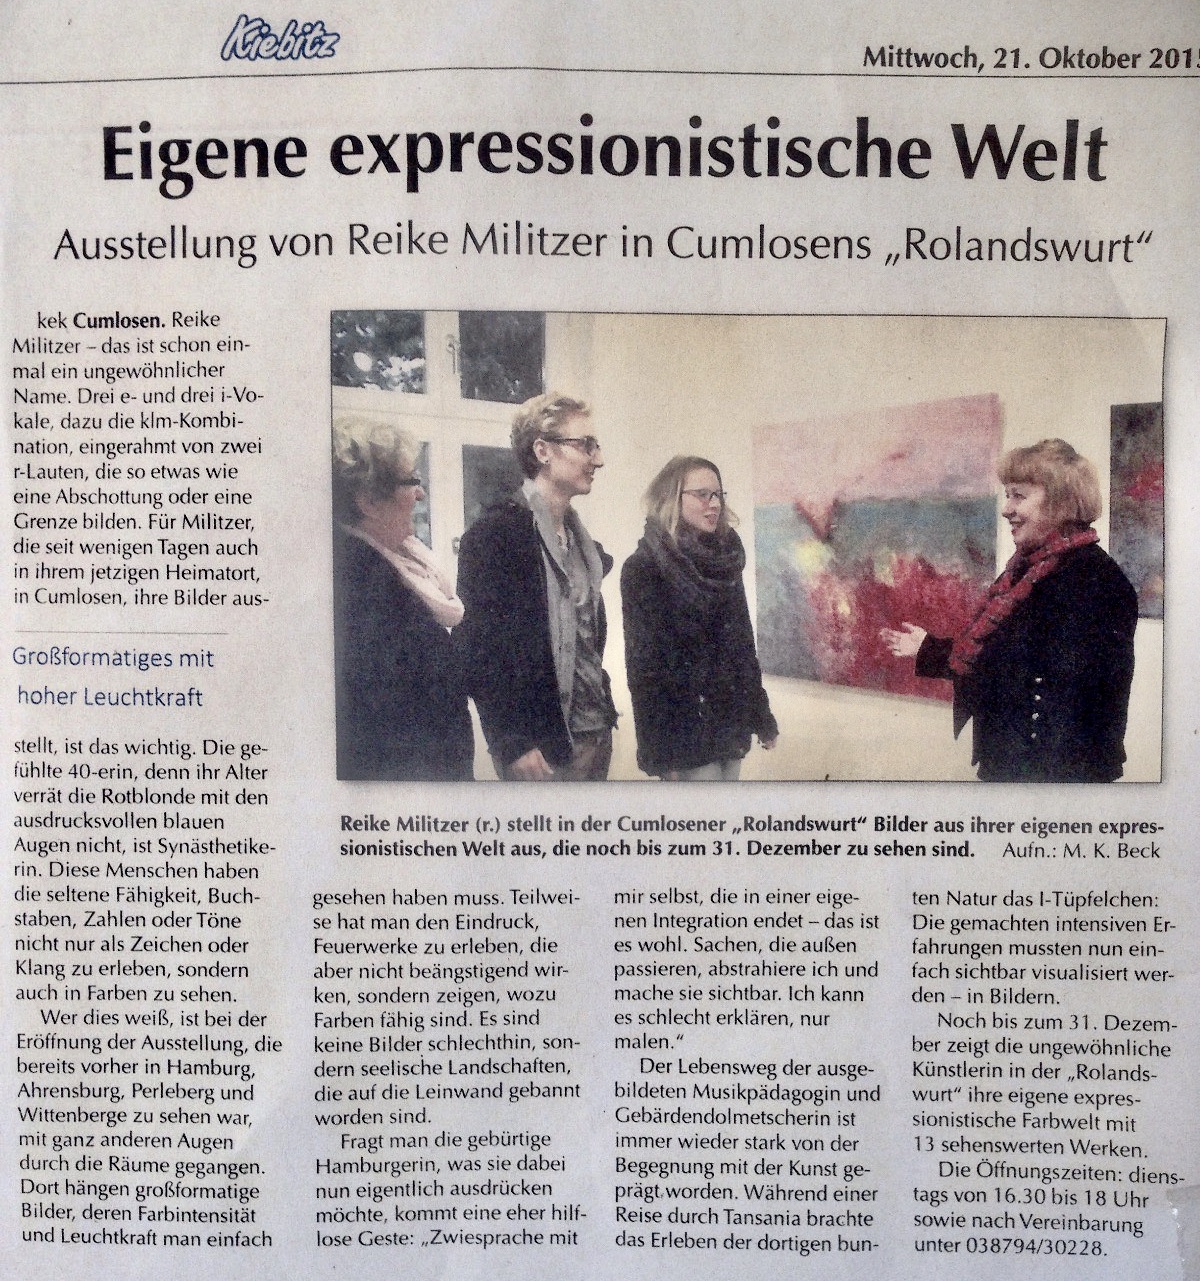 Ausstellung von Reike Militzer in Cumlosens "Rolandswurt"